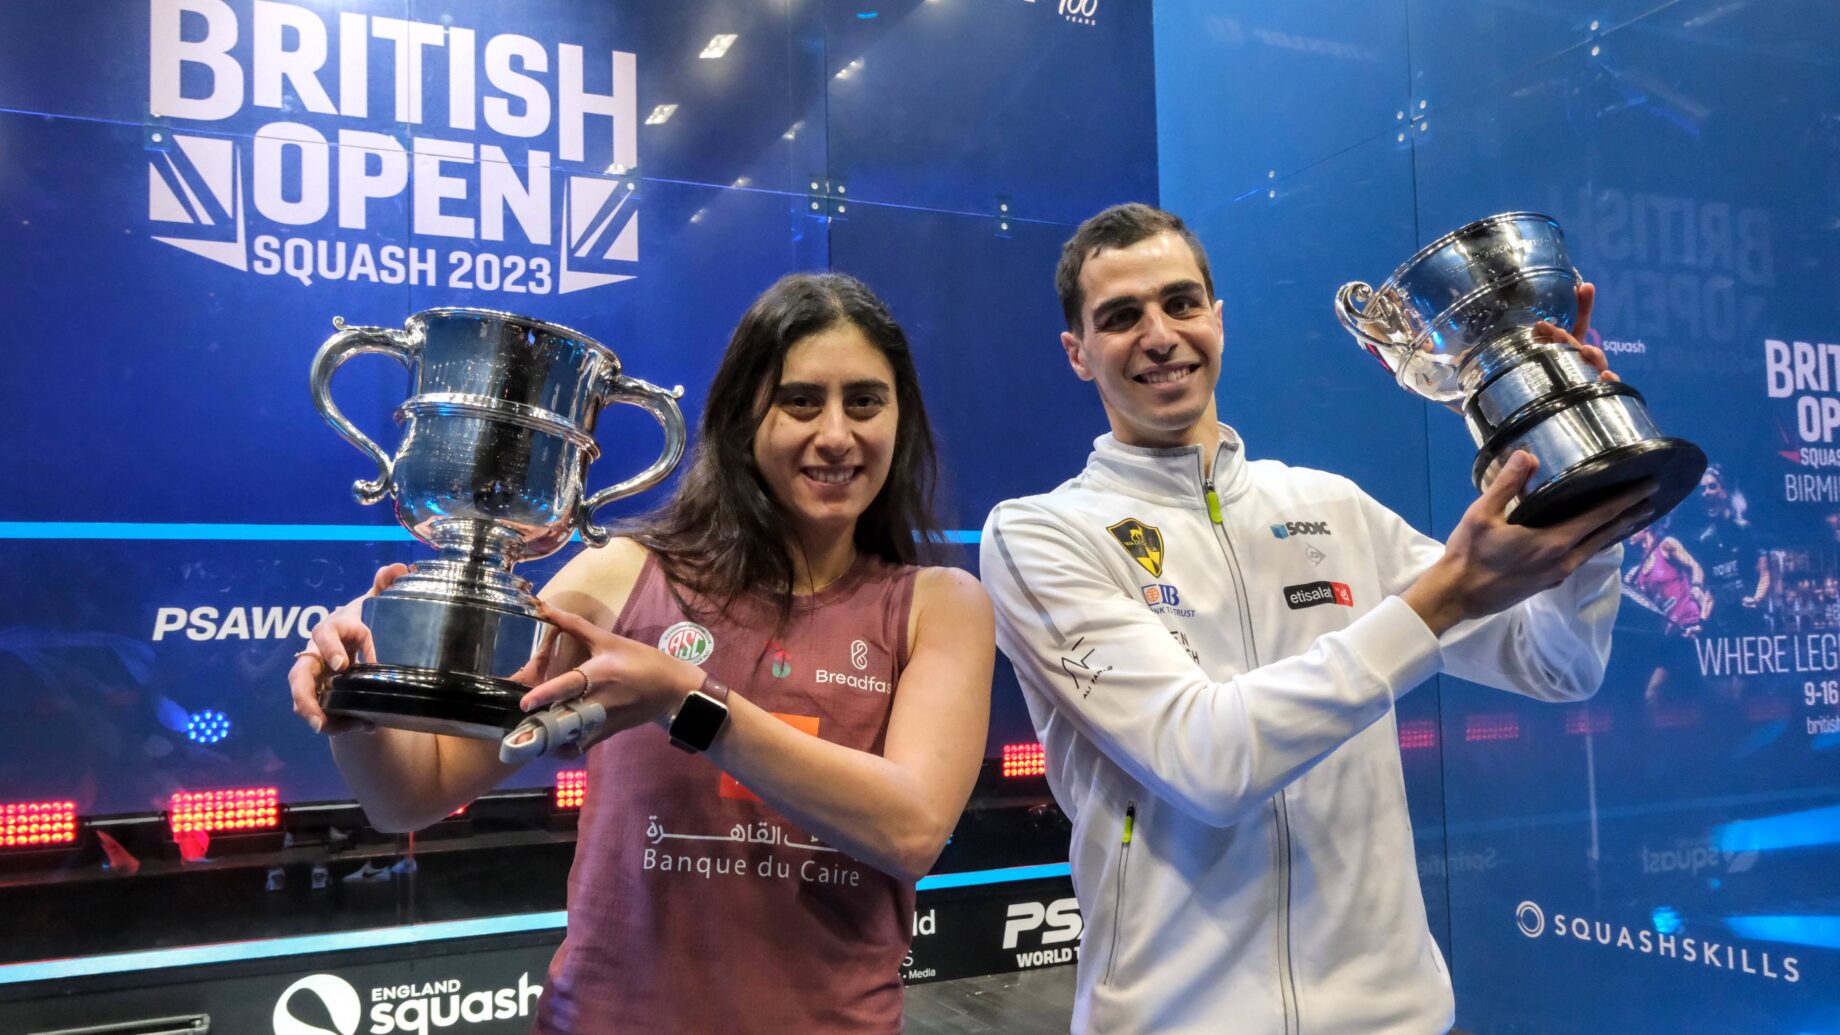 2023 British Open Squash